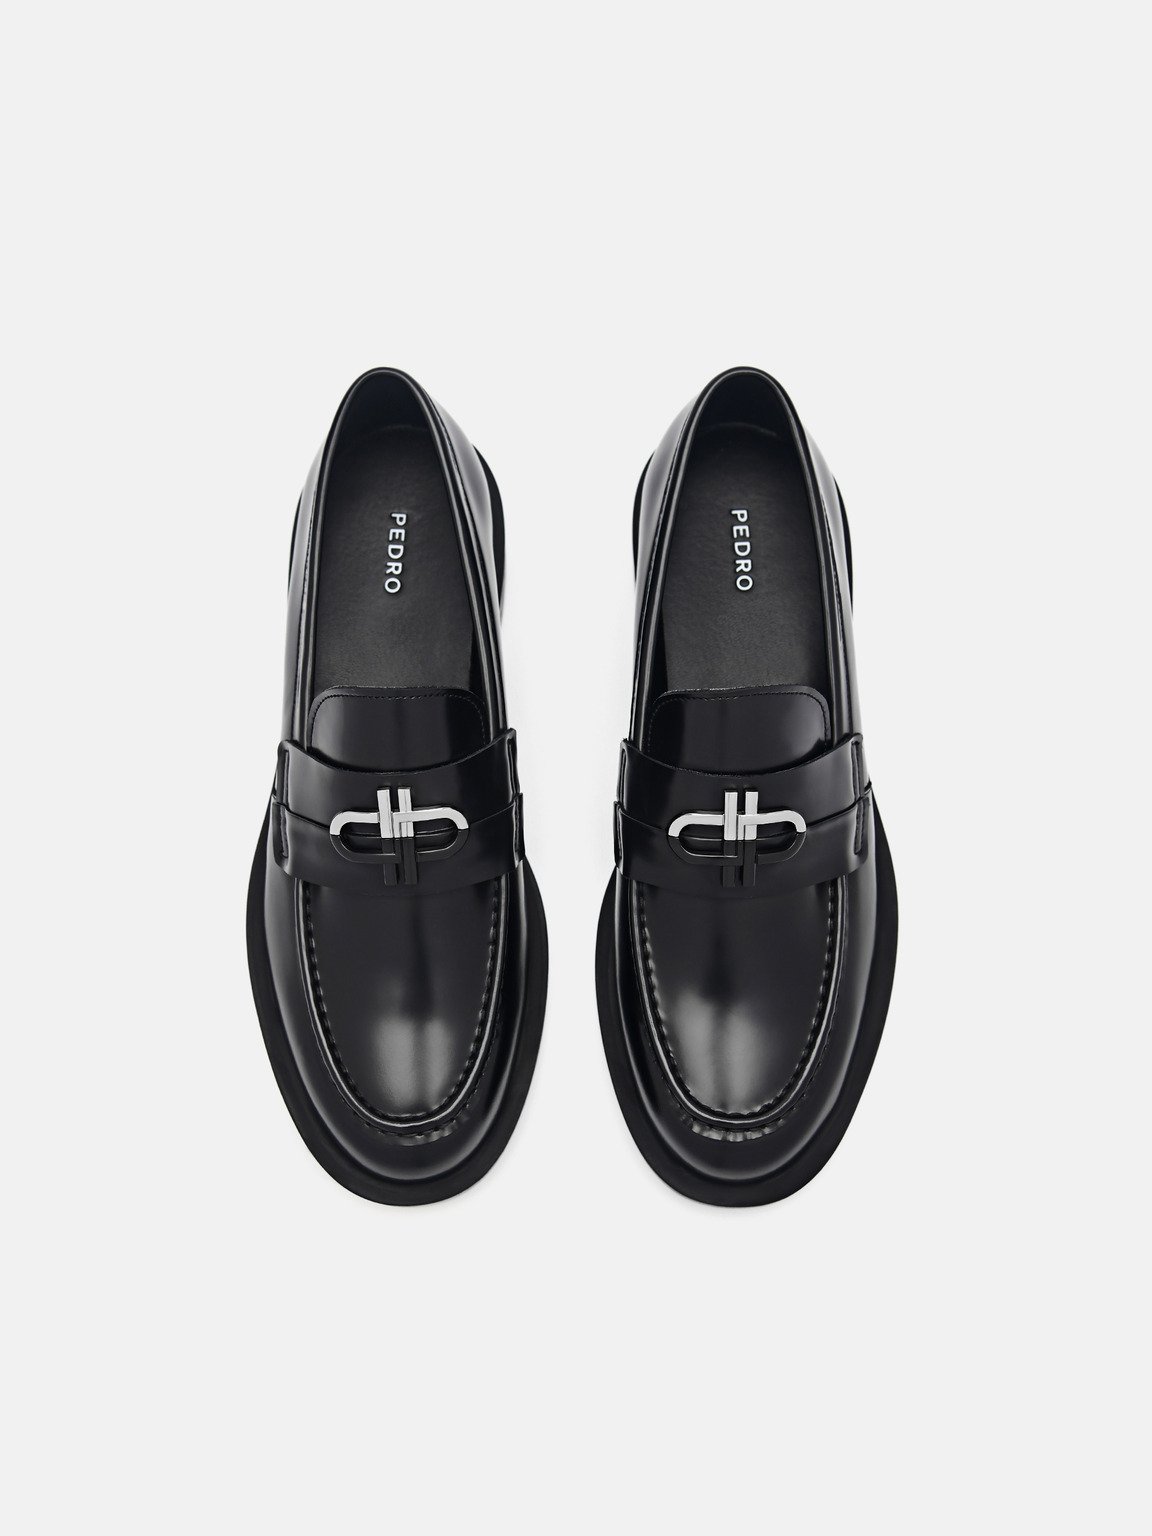 PEDRO標誌皮革樂福鞋, 黑色